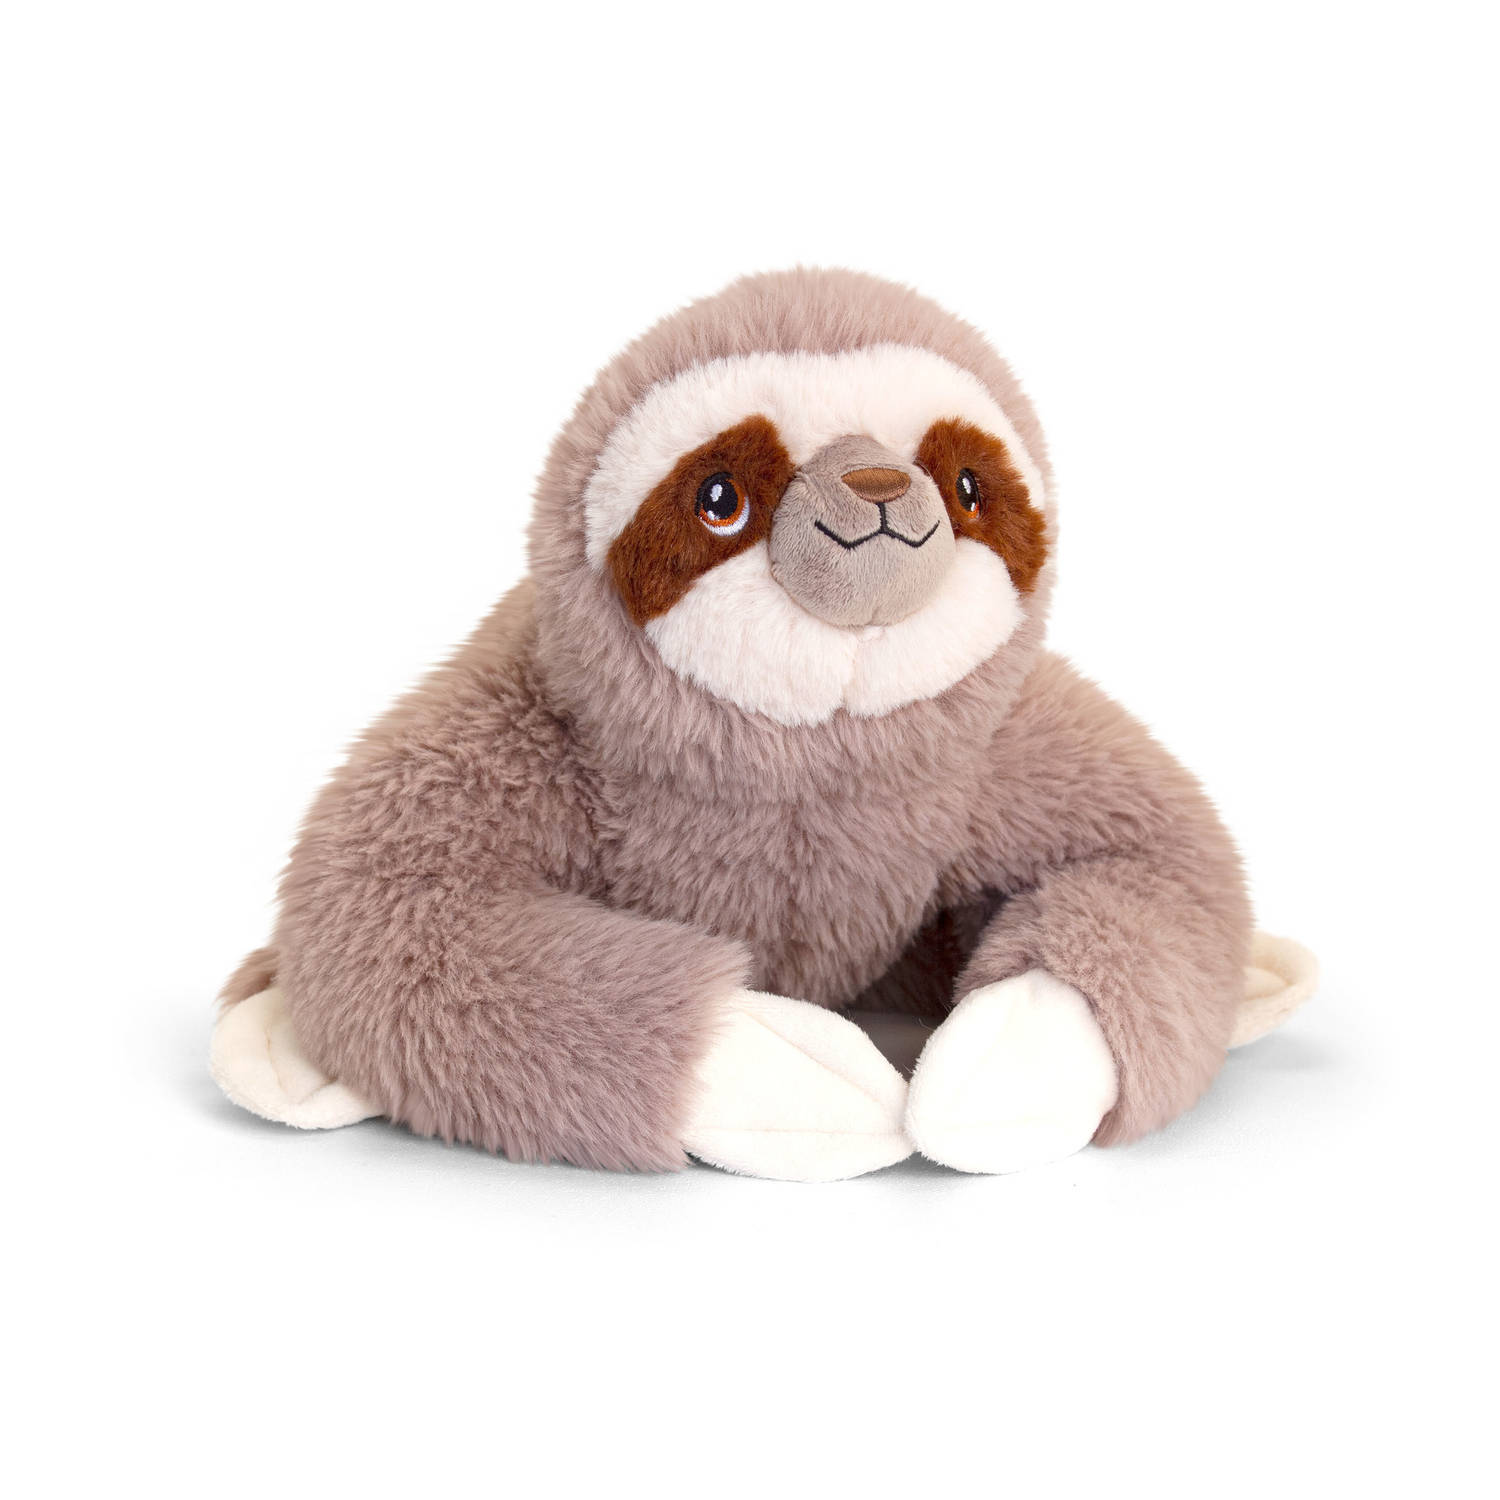 Pluche knuffel dieren luiaard 25 cm - Knuffelbeesten speelgoed